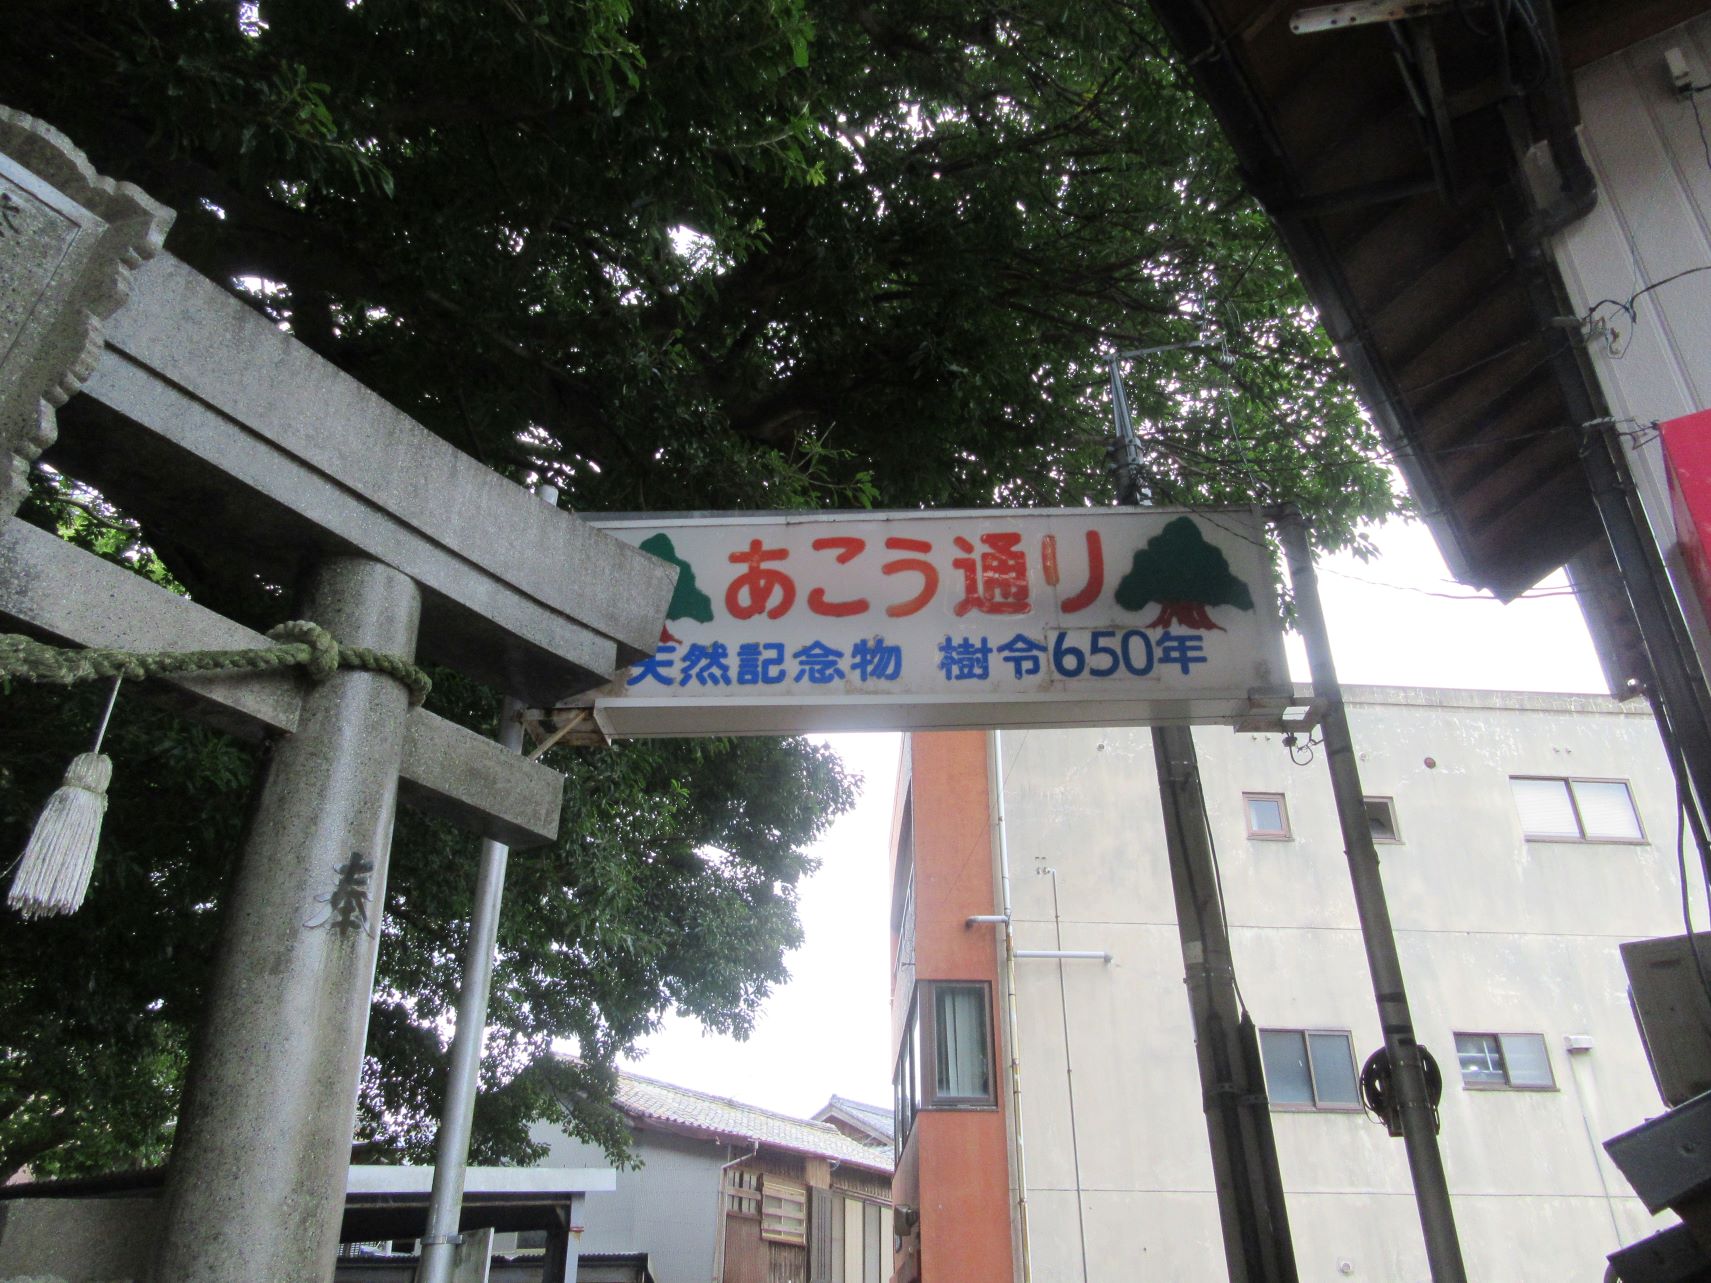 長崎県南松浦郡新上五島町の奈良尾神社付近にある『あこう通り』の看板。